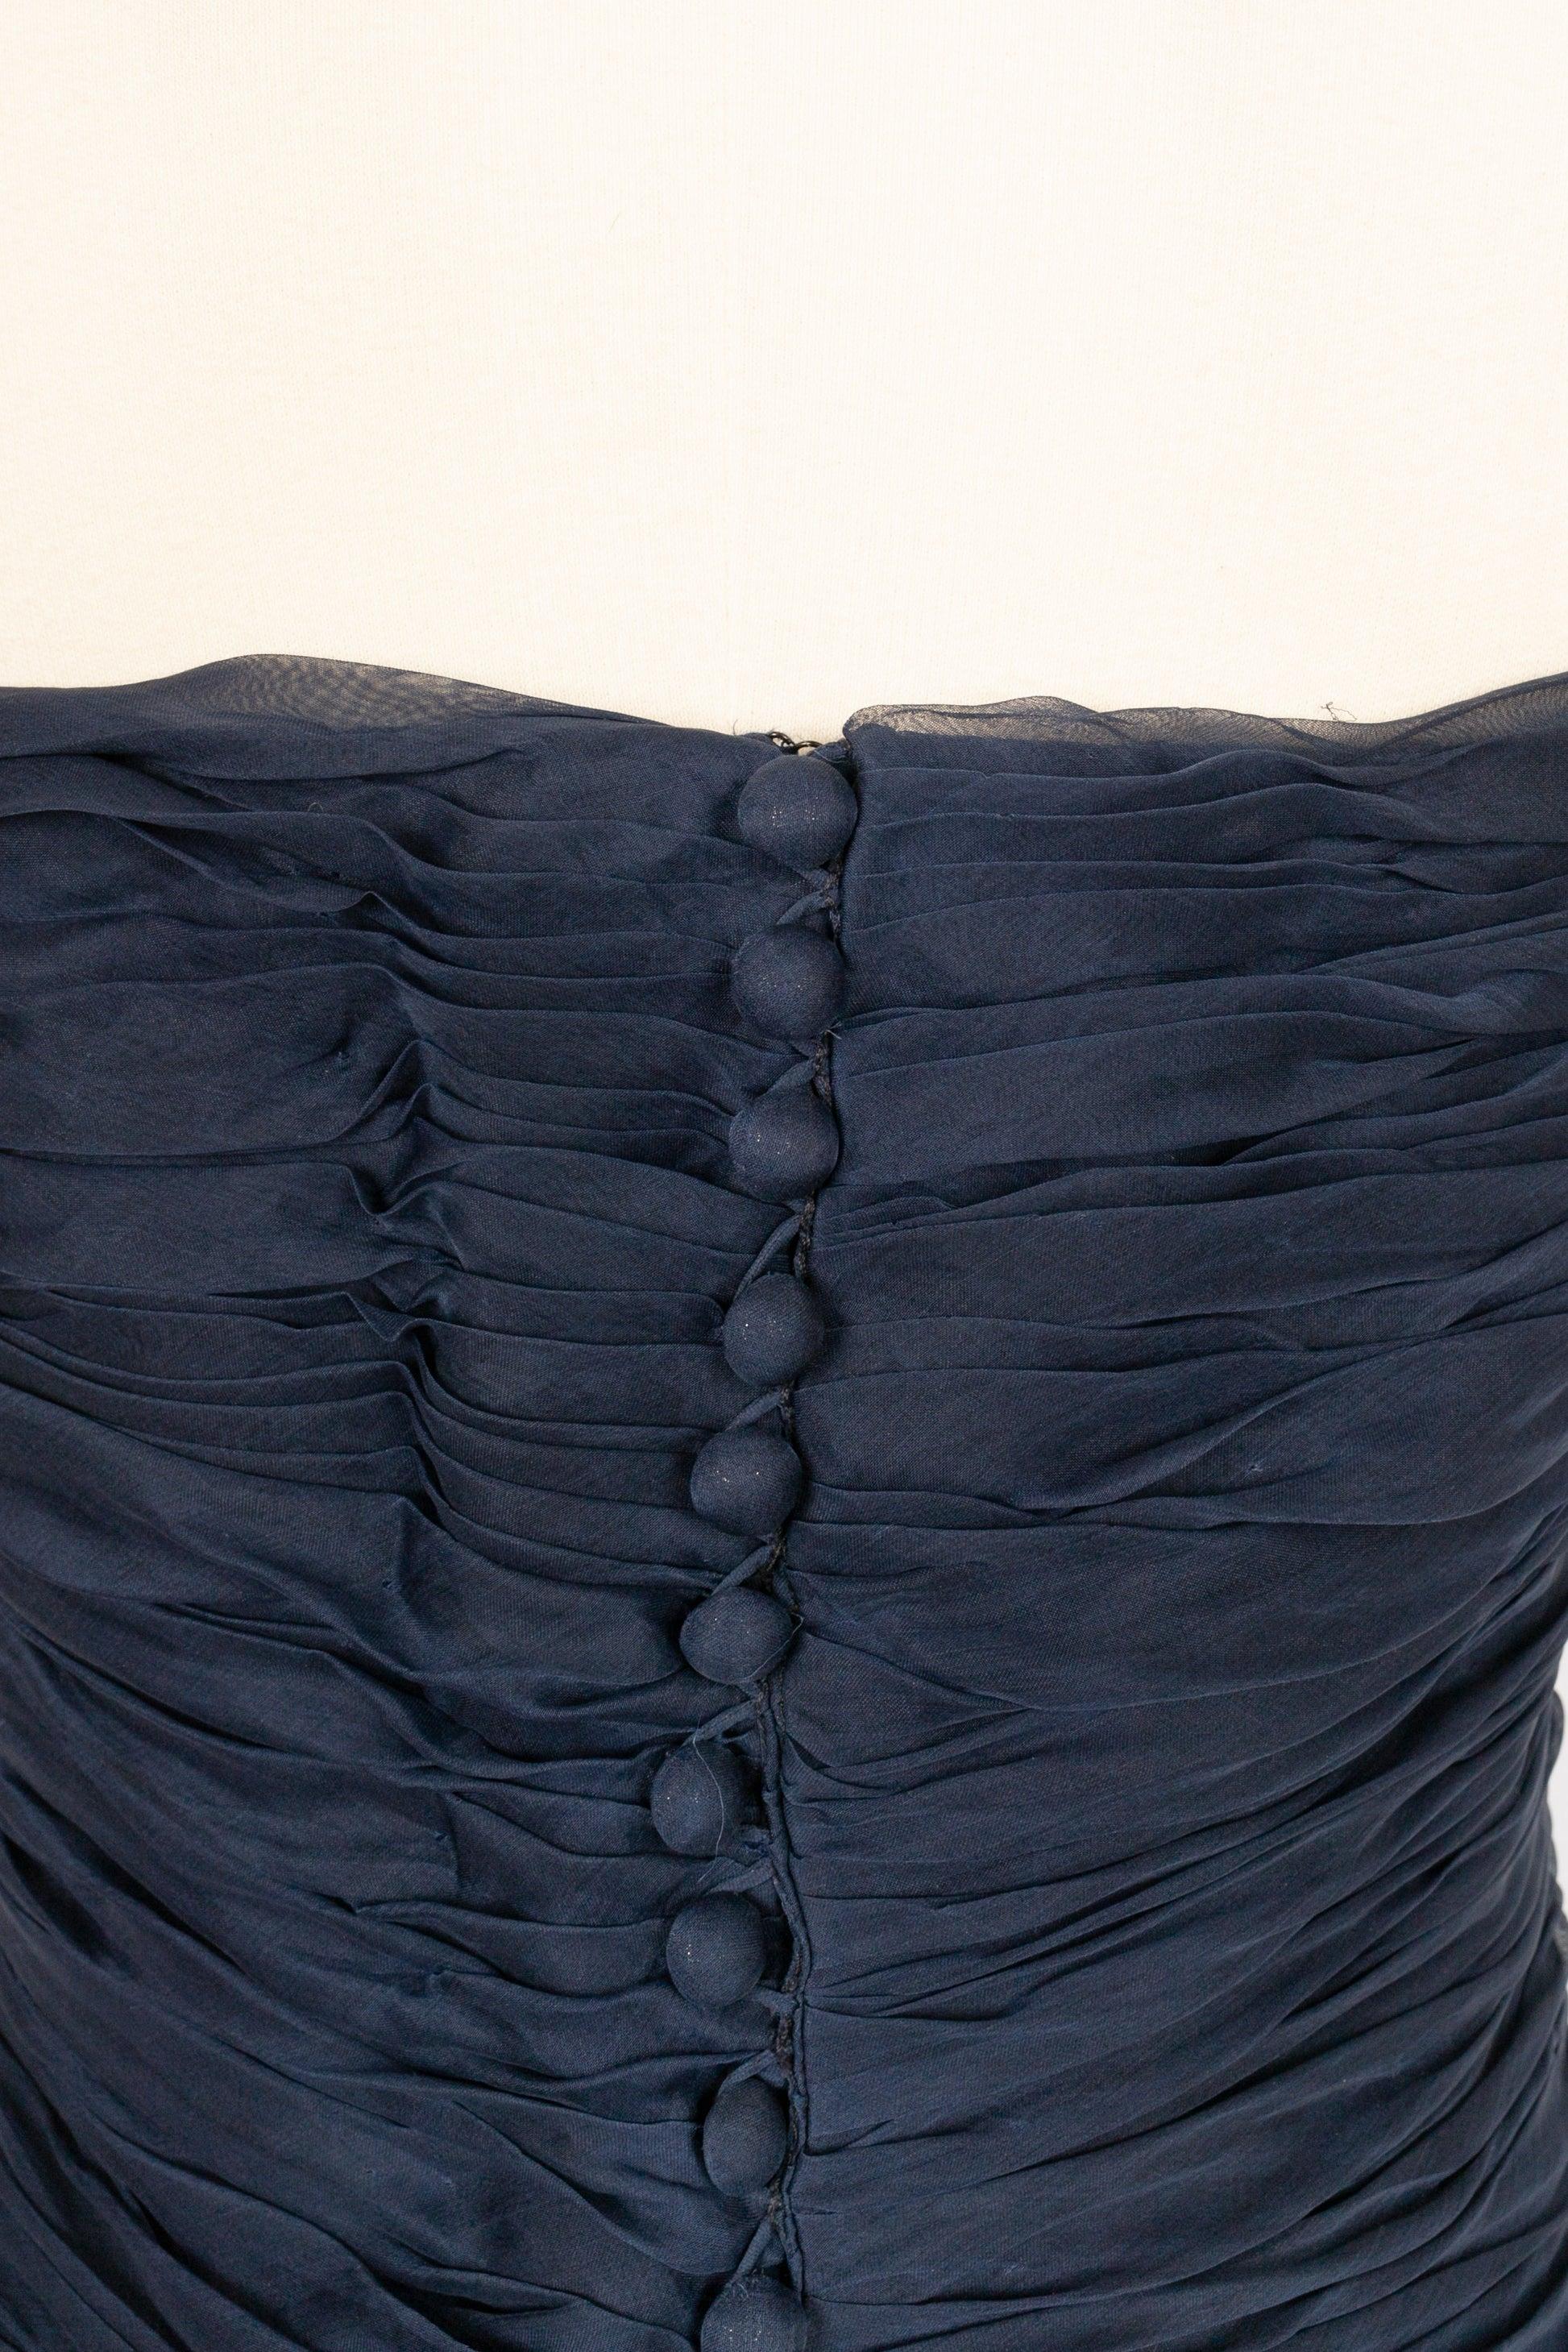 Chanel Long Bustier Dress in Navy Blue Pleated Silk Taffeta For Sale 2